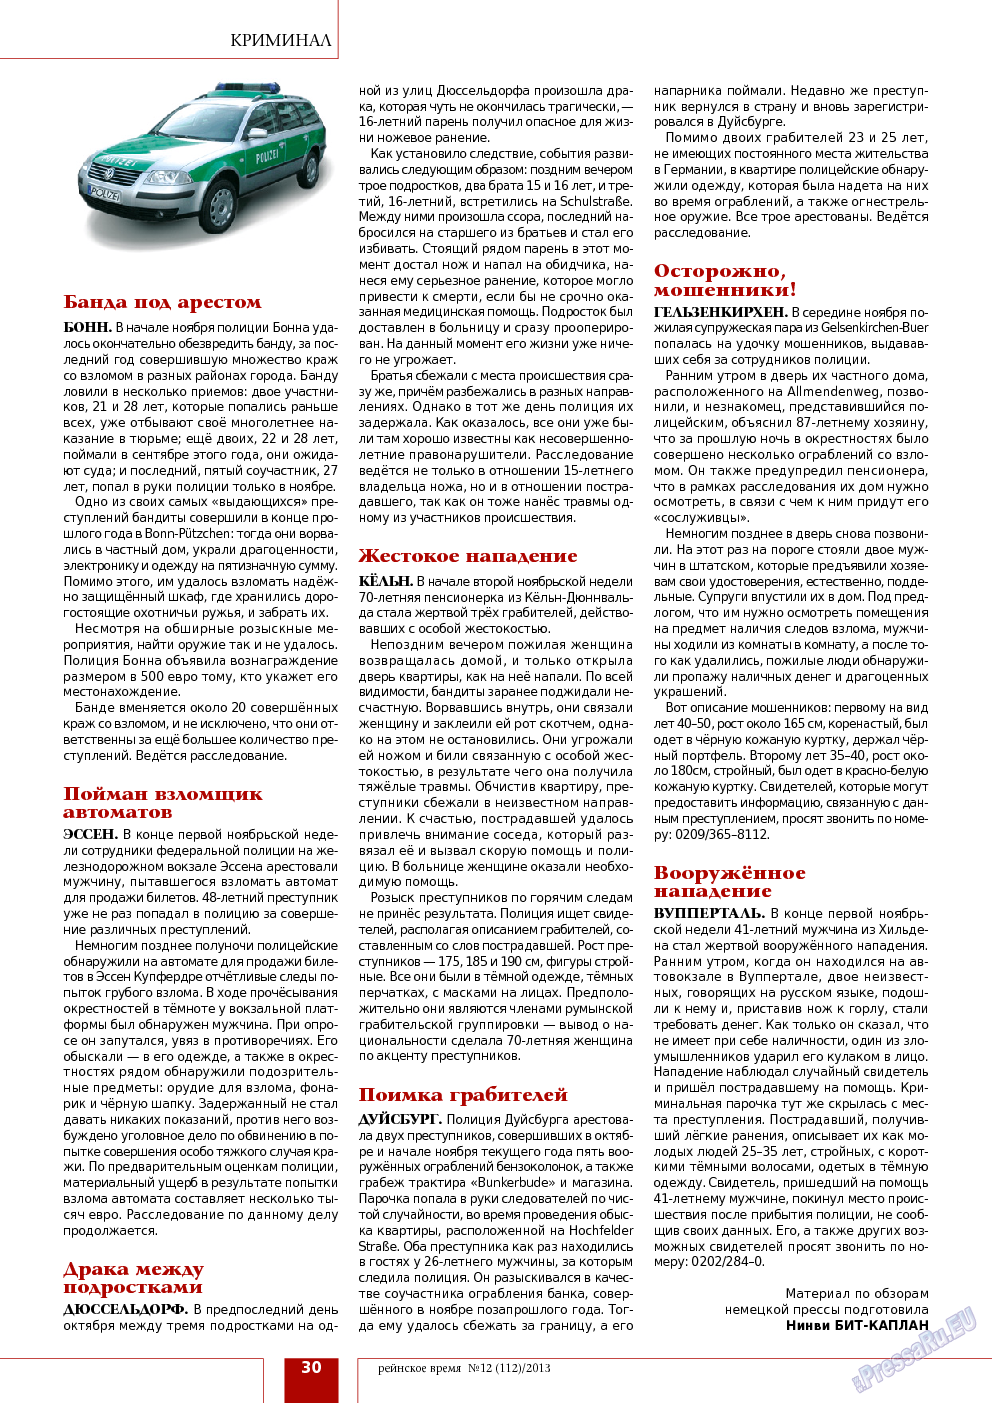 Рейнское время, журнал. 2013 №12 стр.30